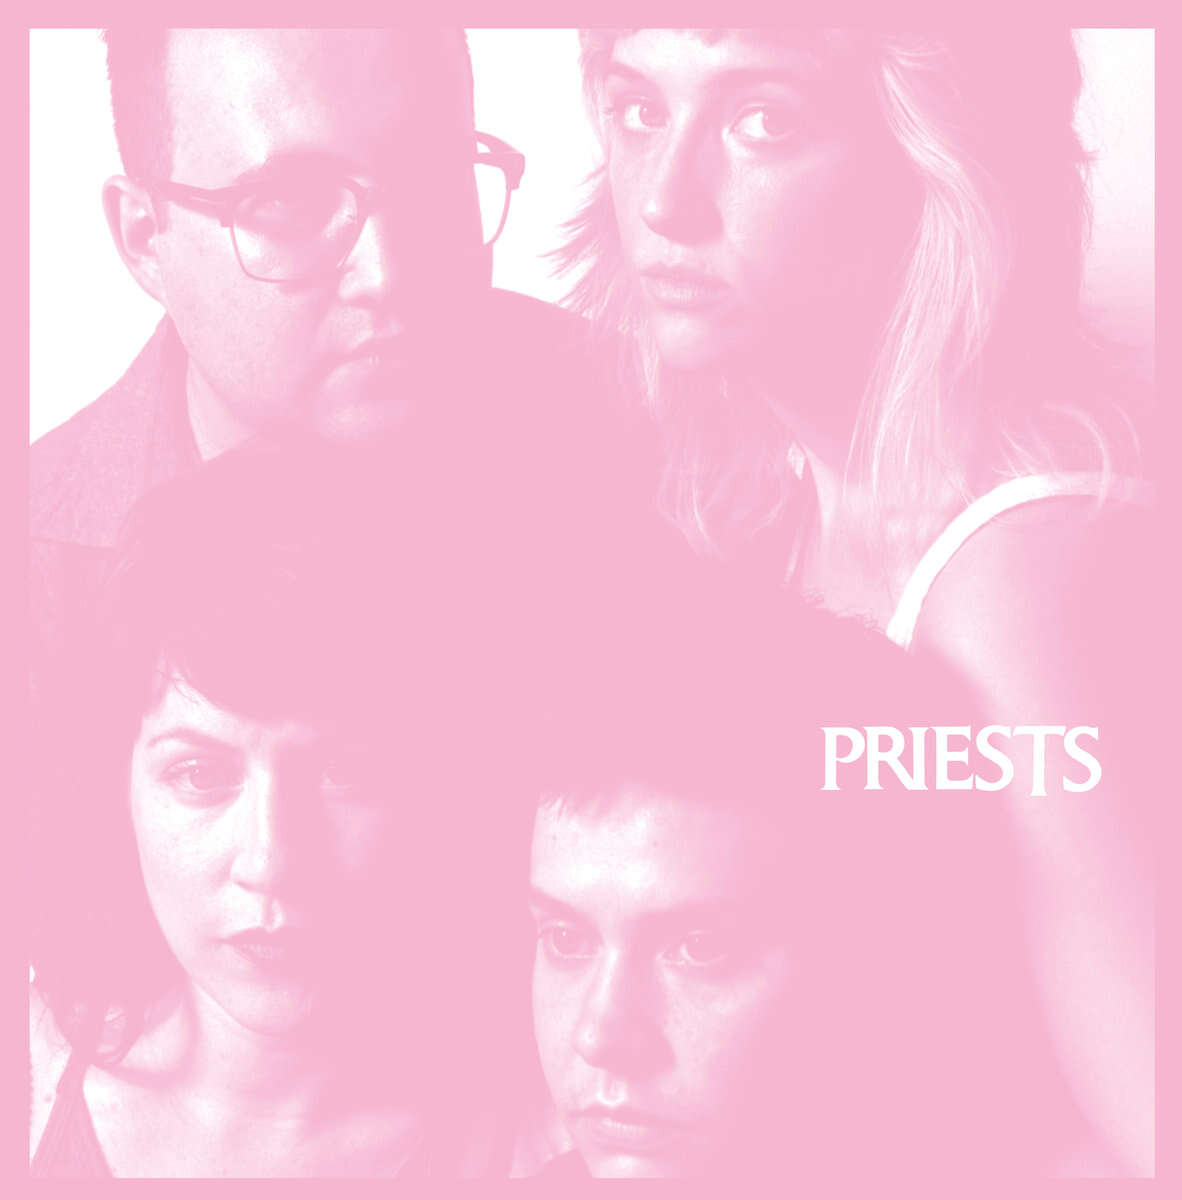 Priests Album